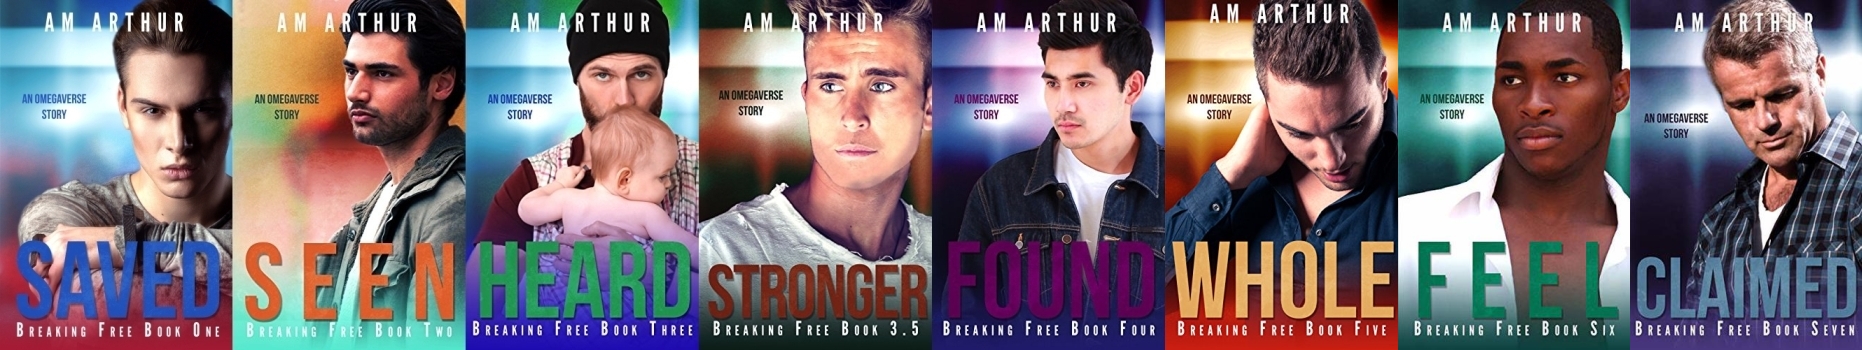 Breaking Free by AM Arthur